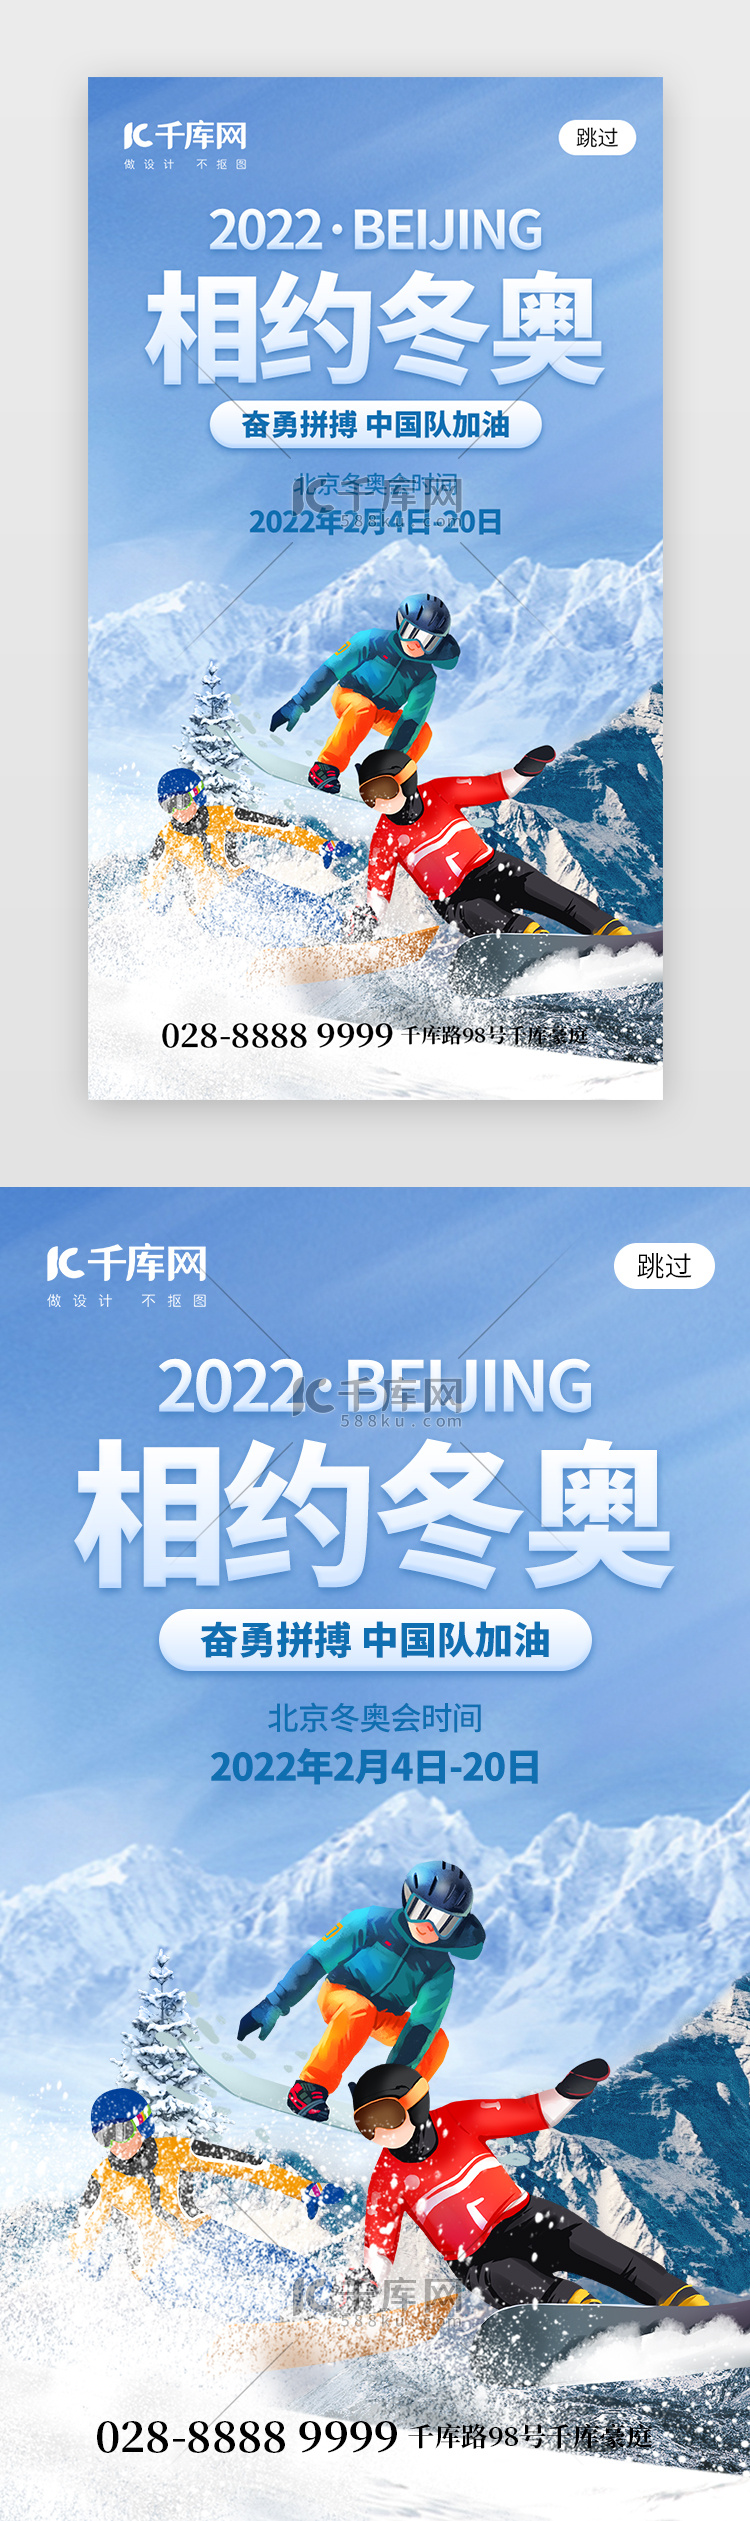 相约北京冬奥app闪屏创意蓝色运动员